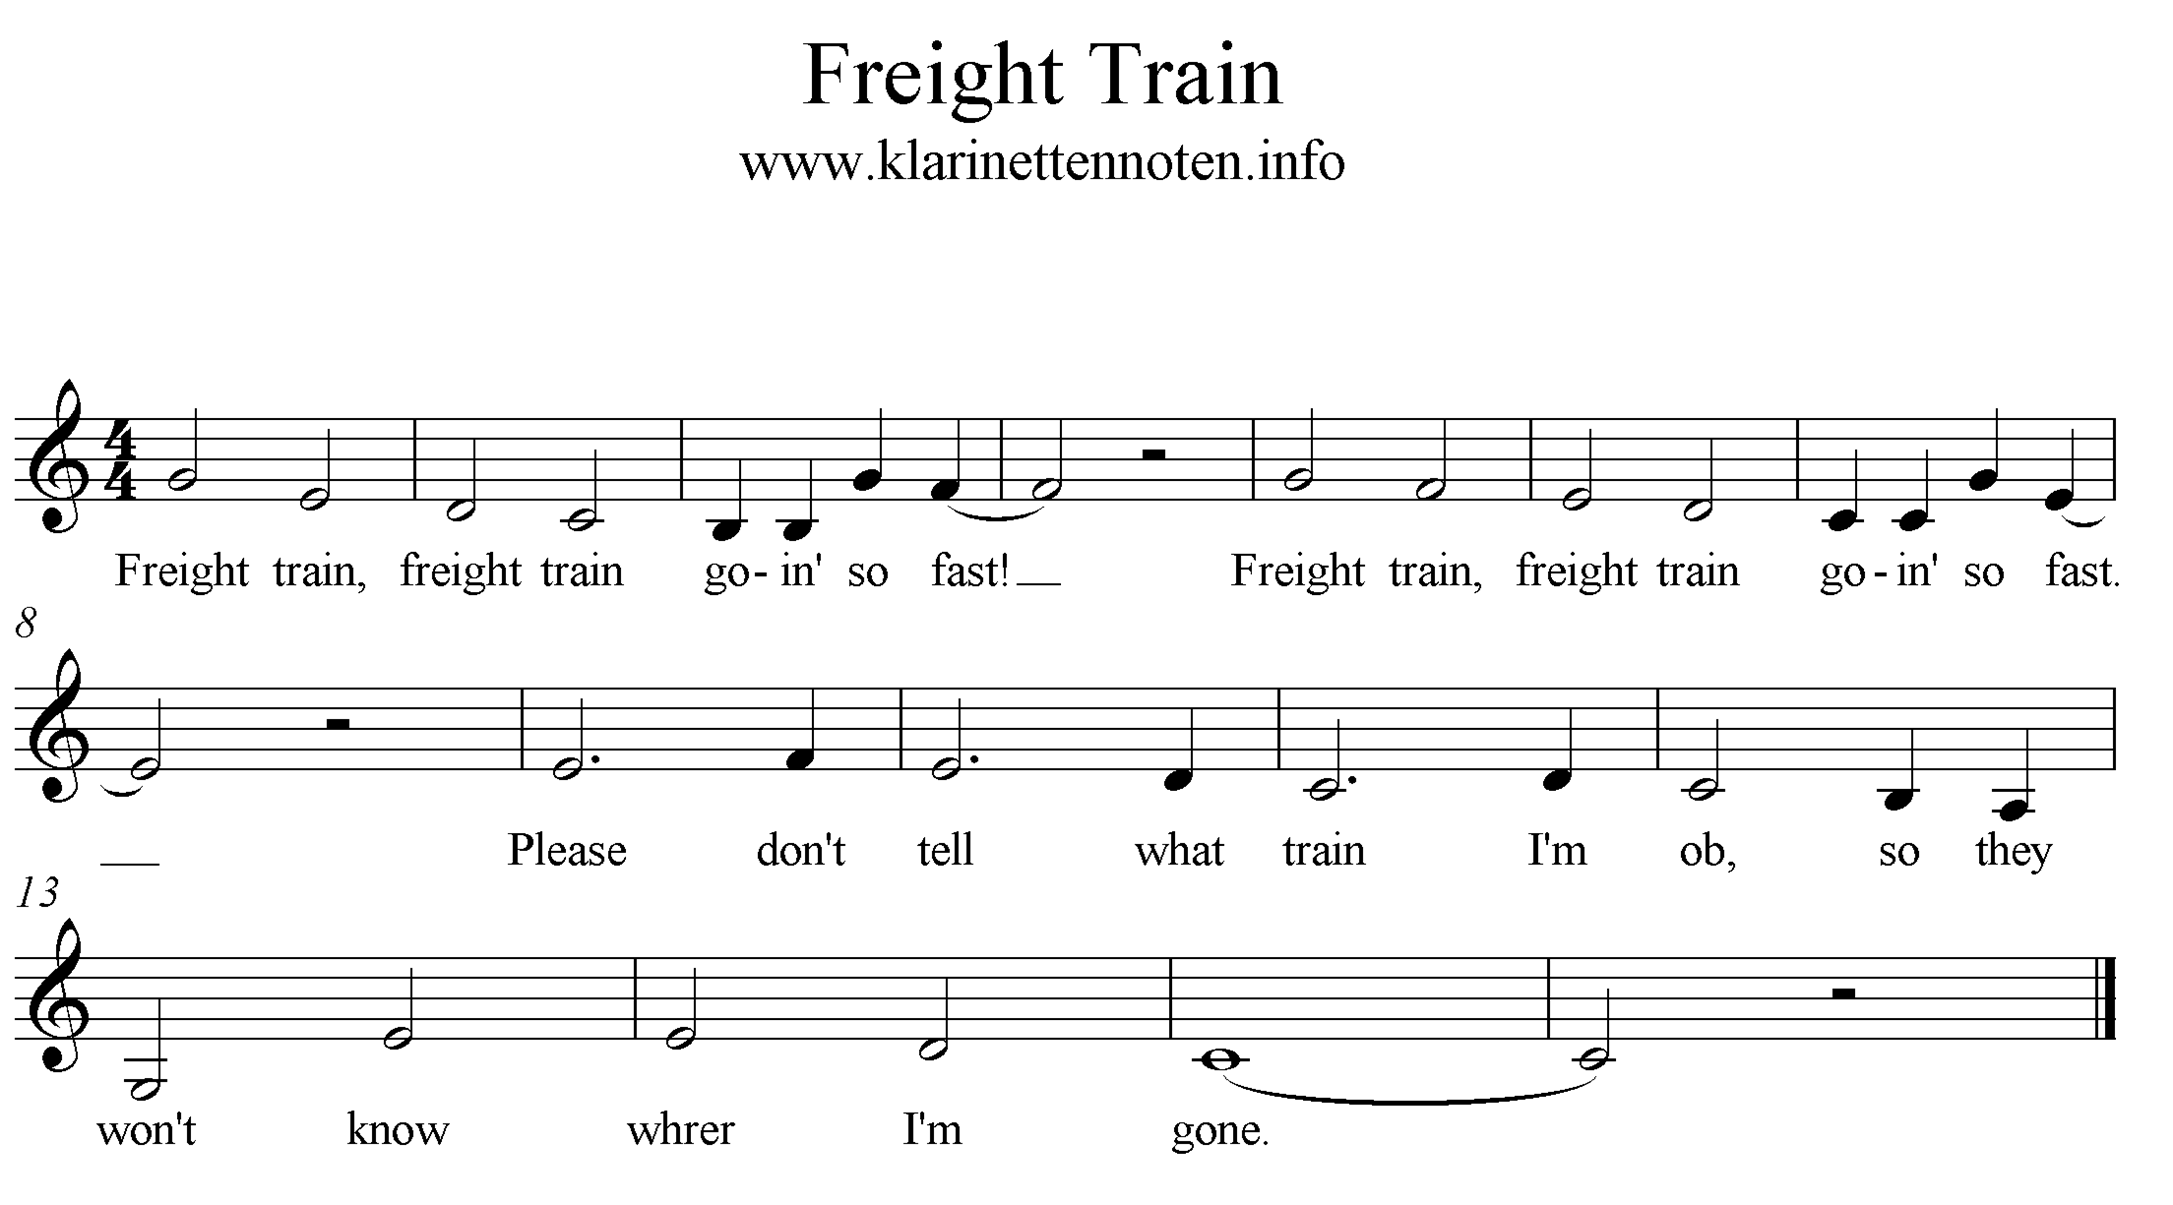 Freight Train freesheet music